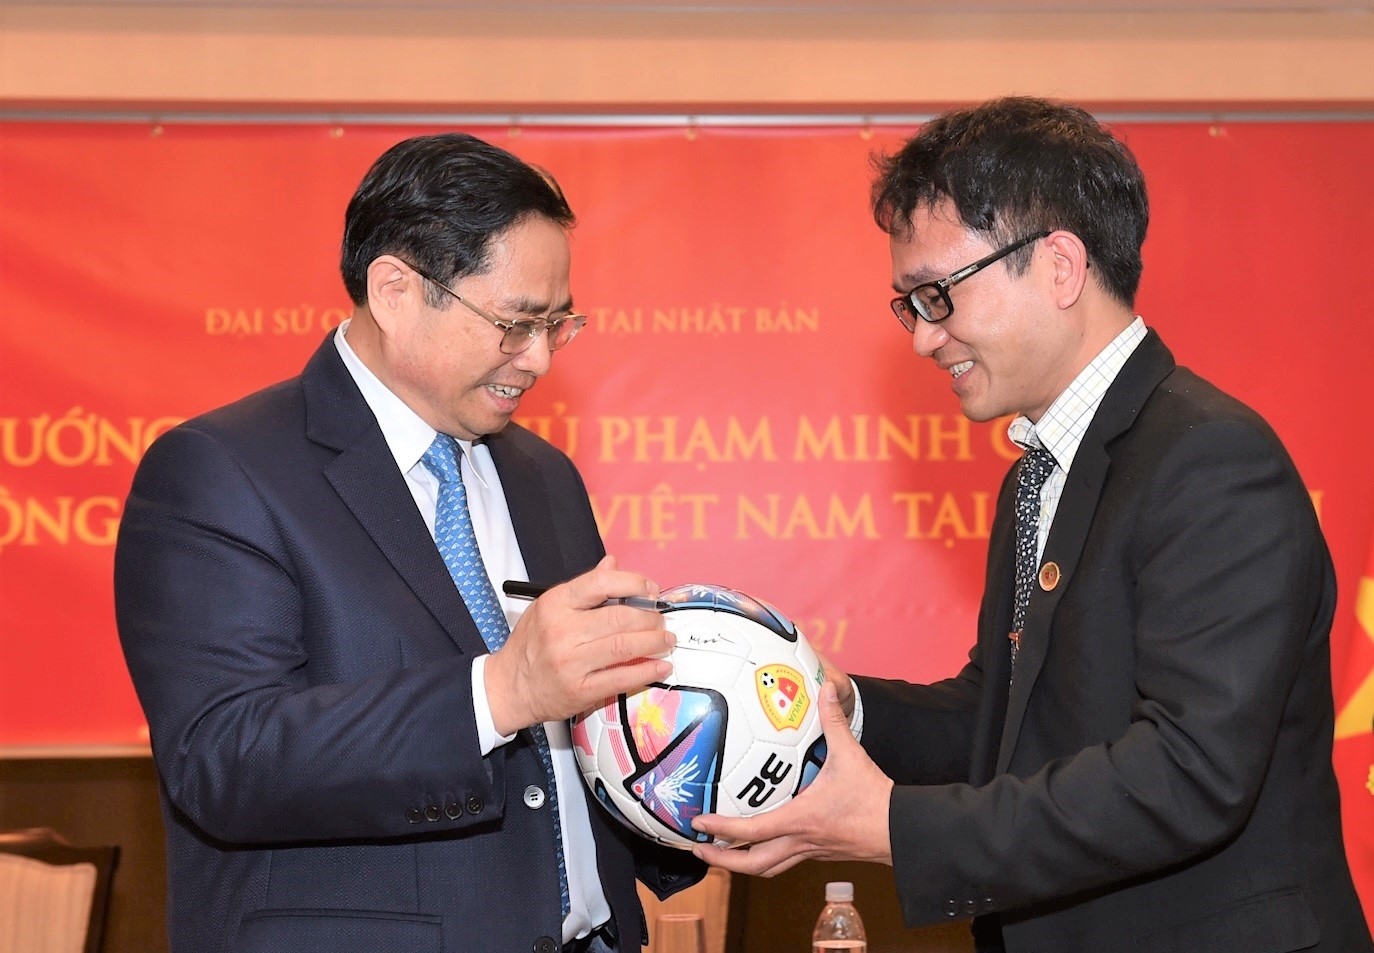 Thủ tướng ký tên lên quả bóng đá giải đấu giao hữu giữa cộng đồng người Việt tại Nhật. Ảnh: VGP/Nhật Bắc